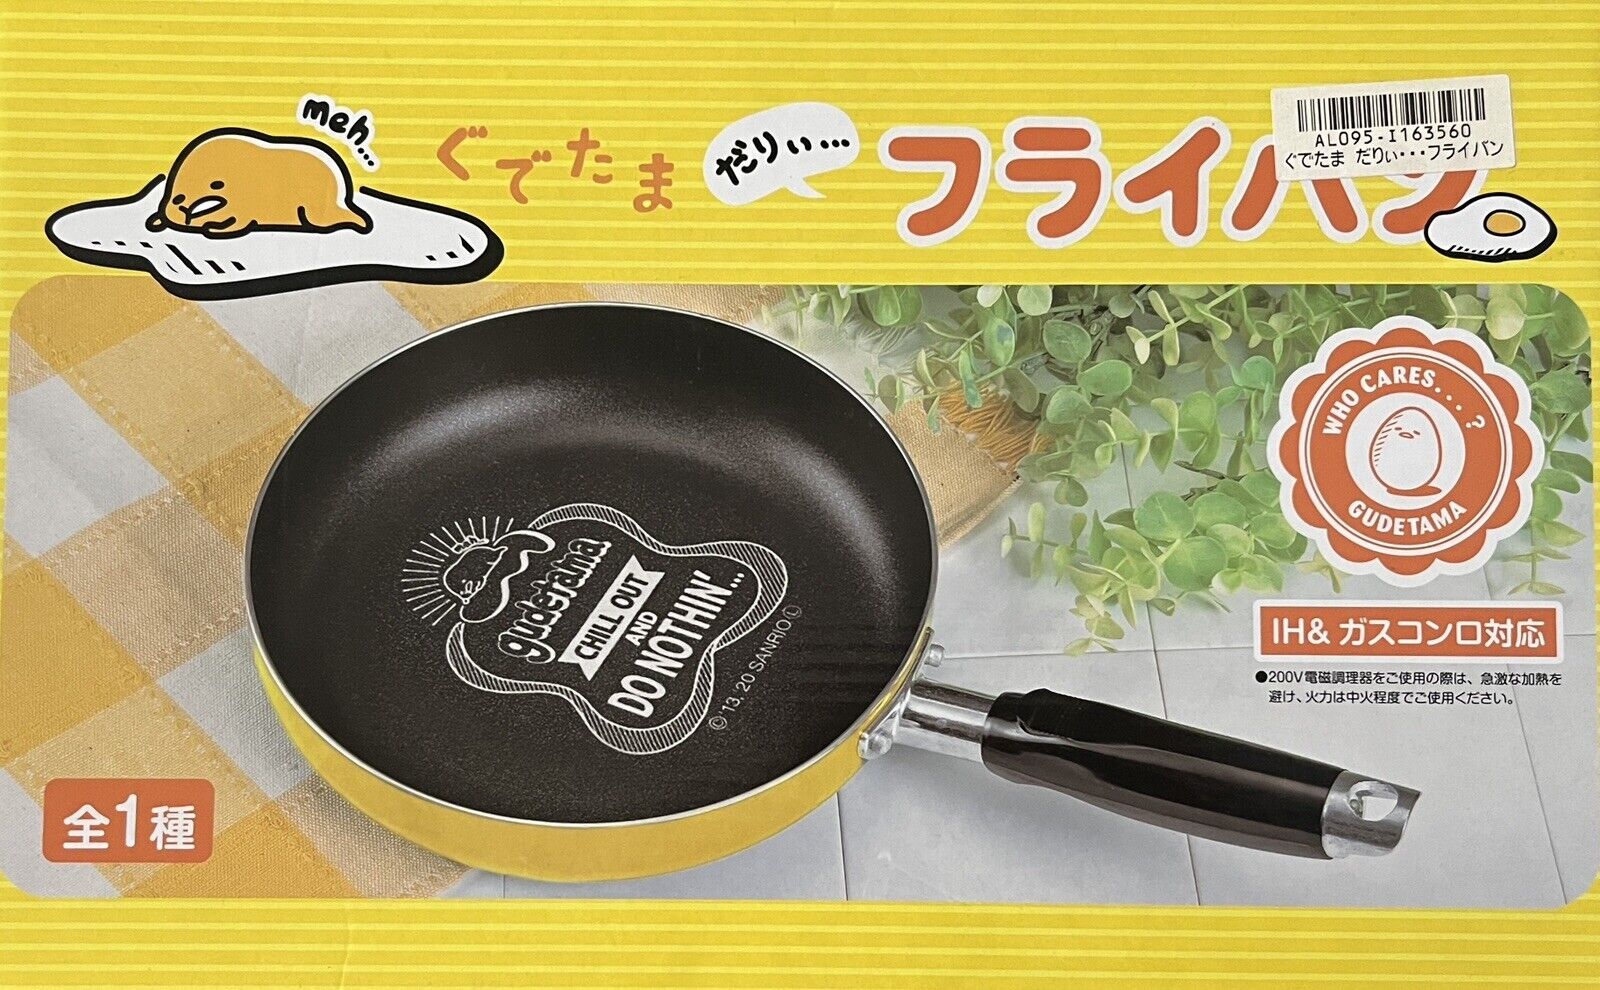 New Gudetama Pan Rare Kawaii Toreba Japan Genuine Cute Cook Fry Pan Gift Present